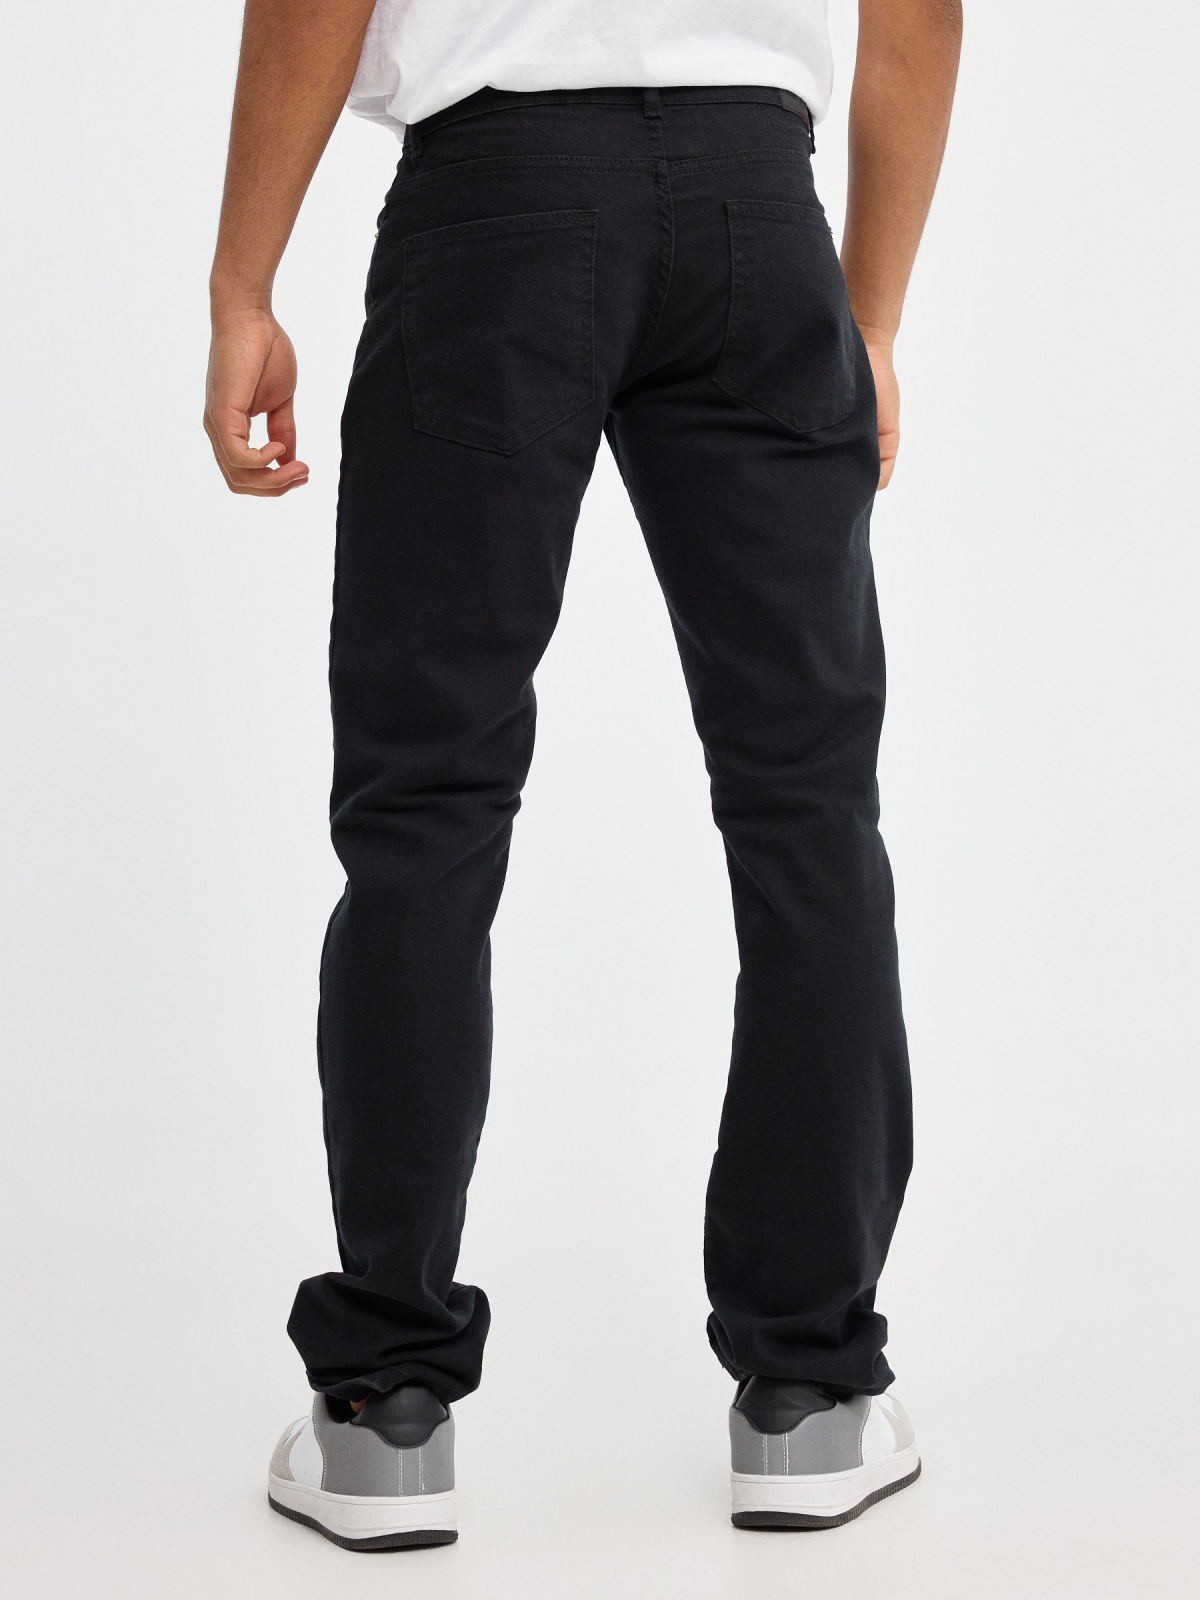 Jeans básicos de colores negro vista media trasera